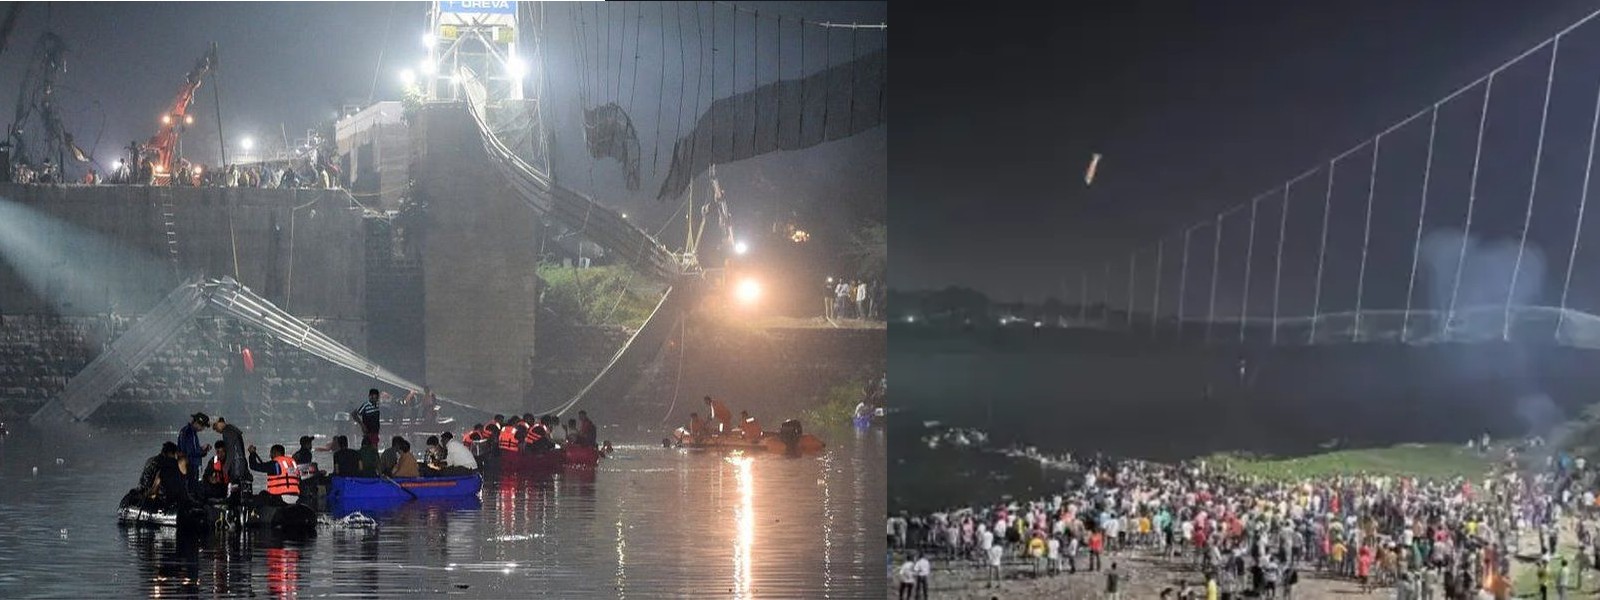 India Bridge Collapse: Death toll rises to 141